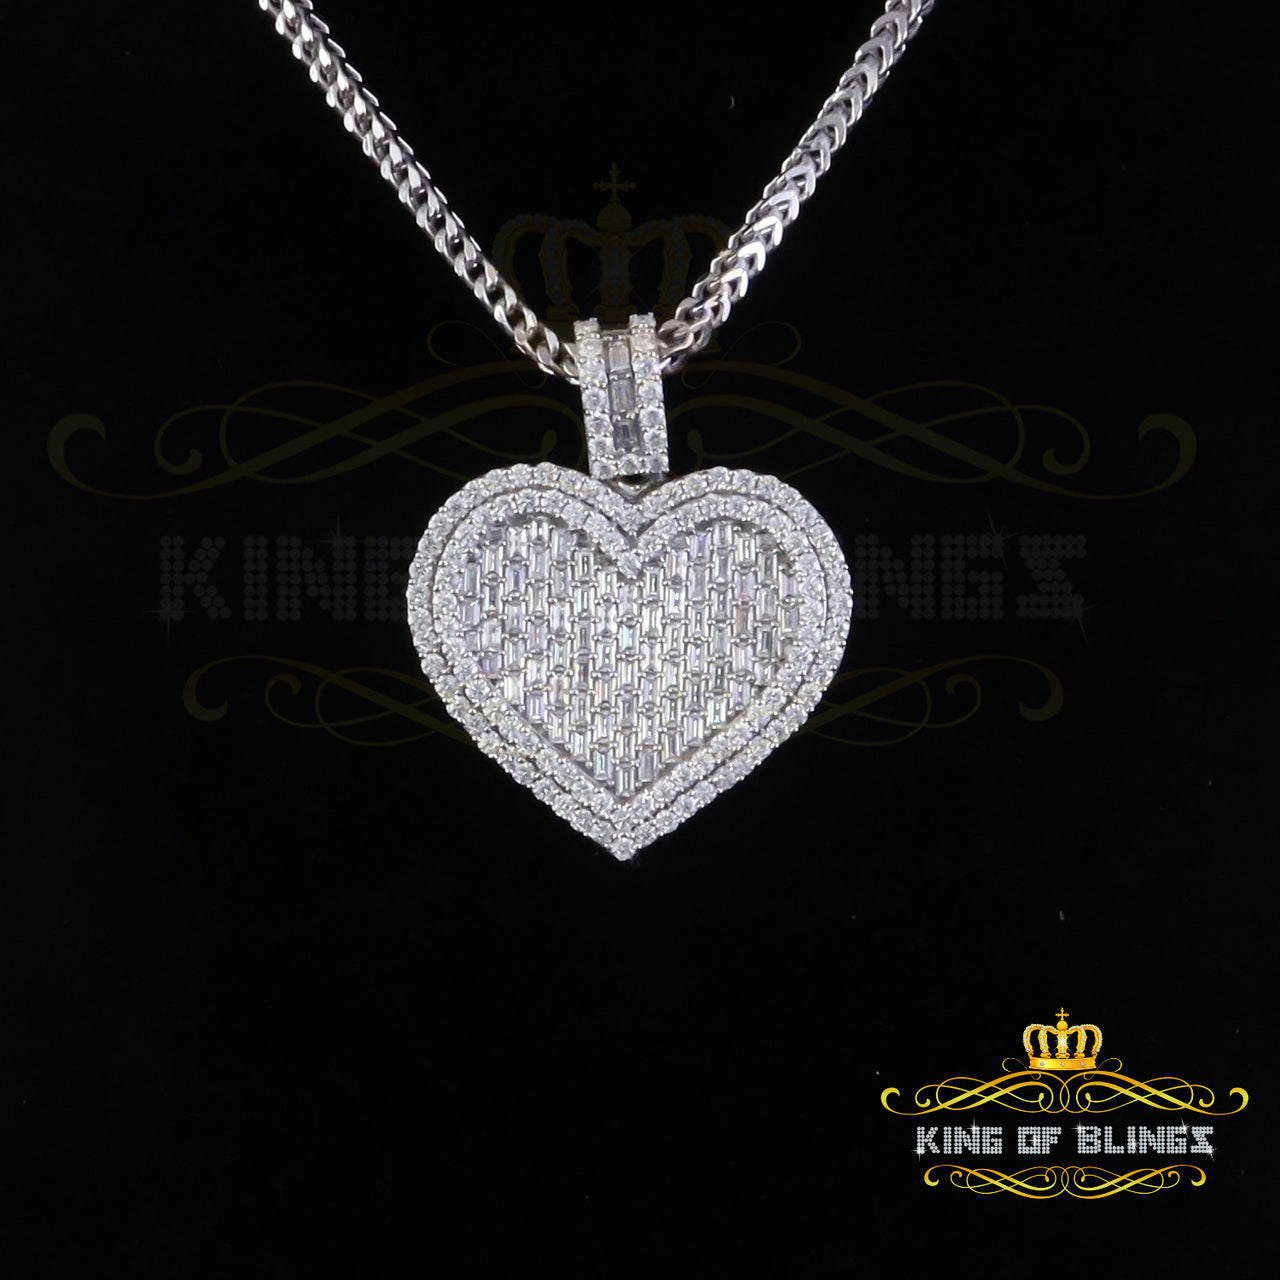 King Of Bling's 925 Sterling Silver White Heart Pendant 7.50ct VVS D Clr. Moissanite for He/She KING OF BLINGS